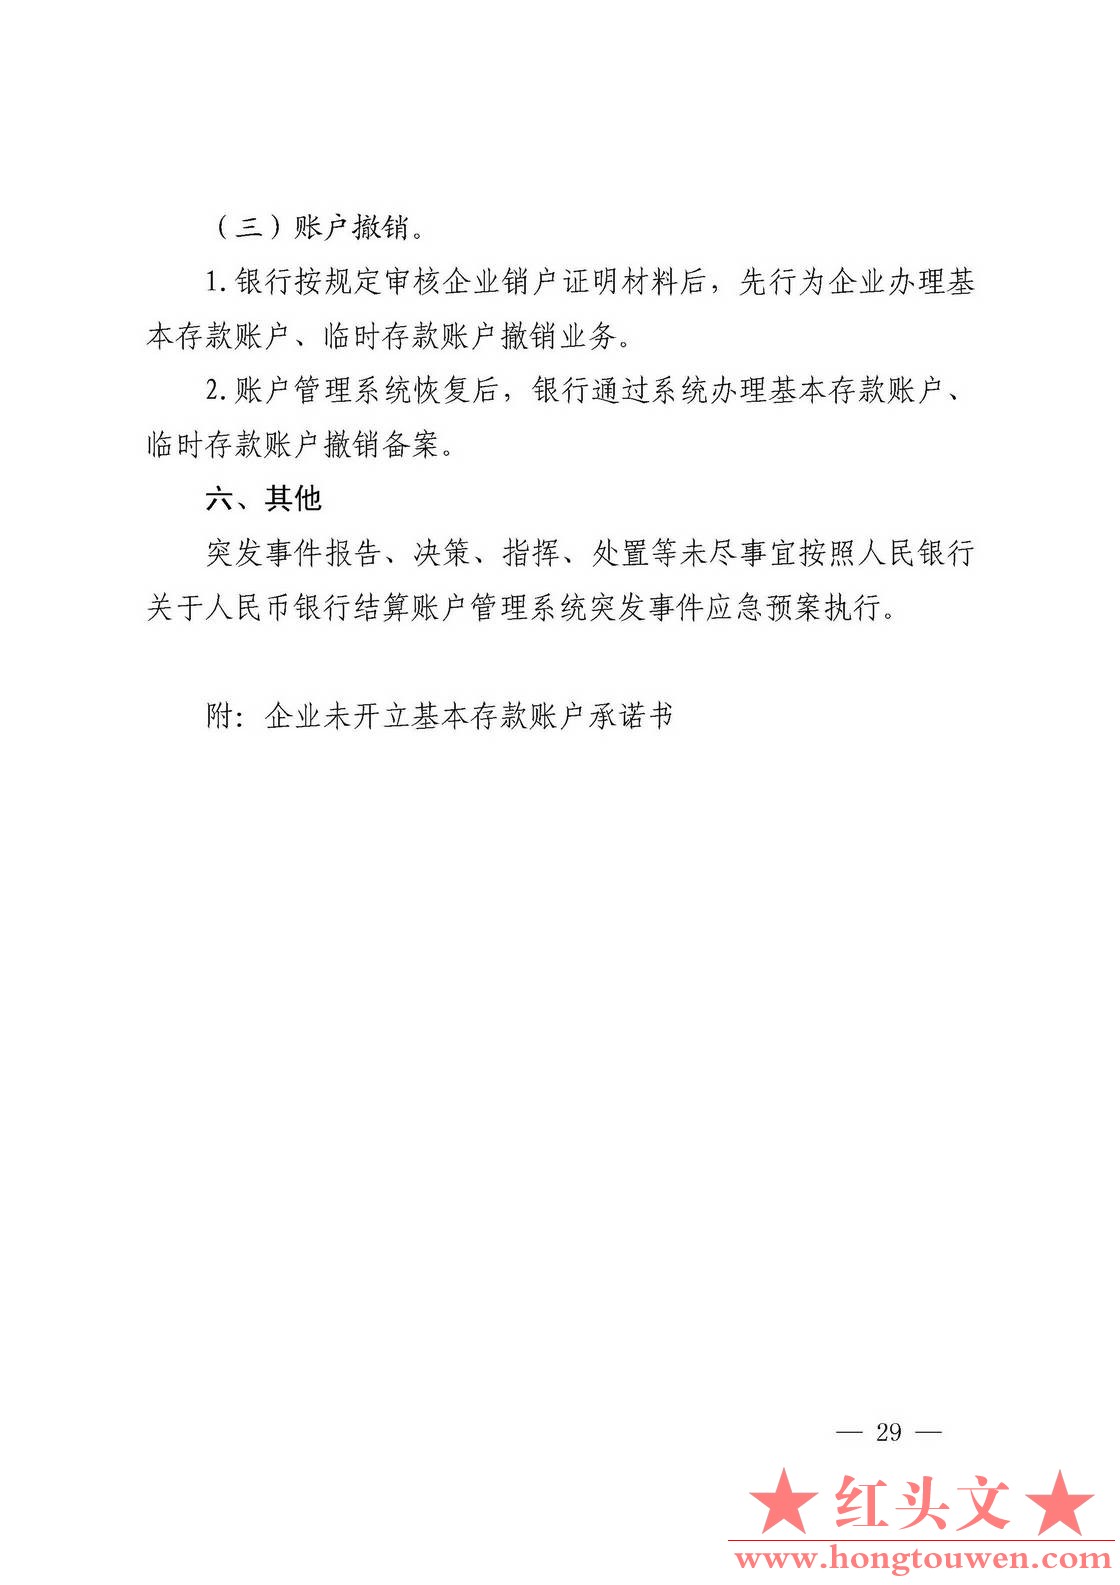 银发[2019]41号-中国人民银行关于取消企业银行账户许可的通知_页面_29.jpg.jpg